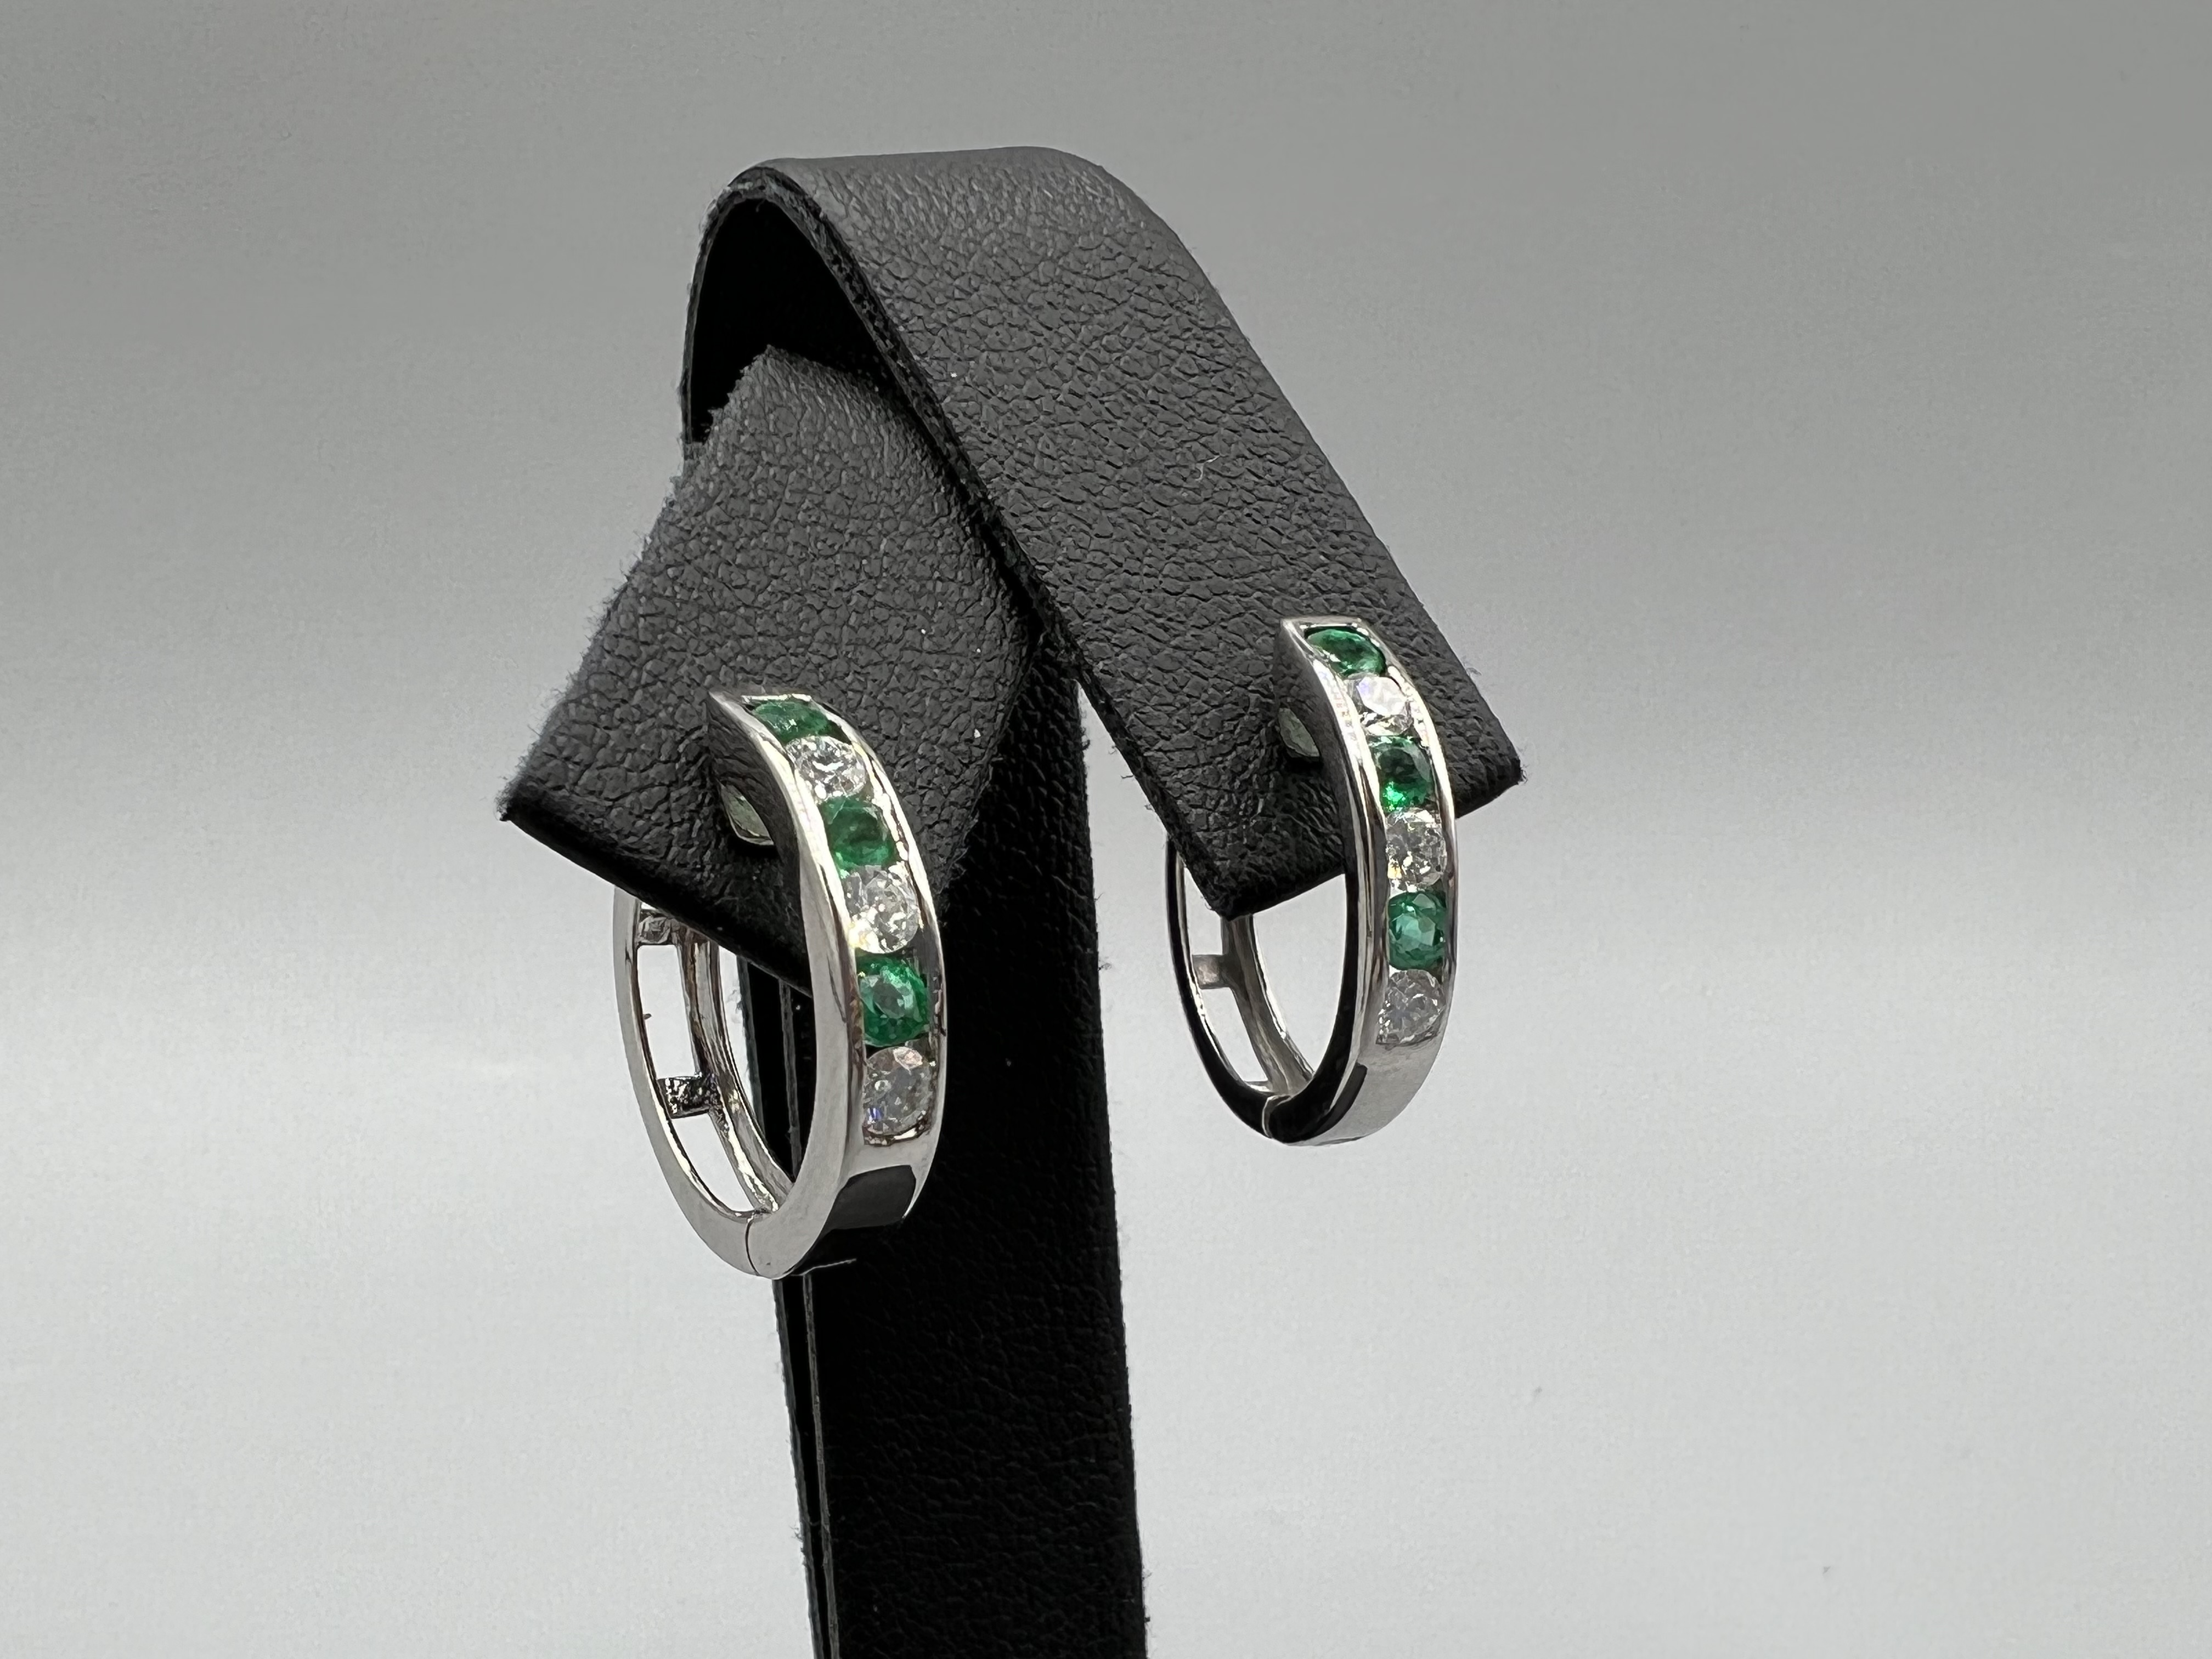 Brand New Ex-Display Diamond & Emerald Hoop Earring - 4grams - Image 2 of 3